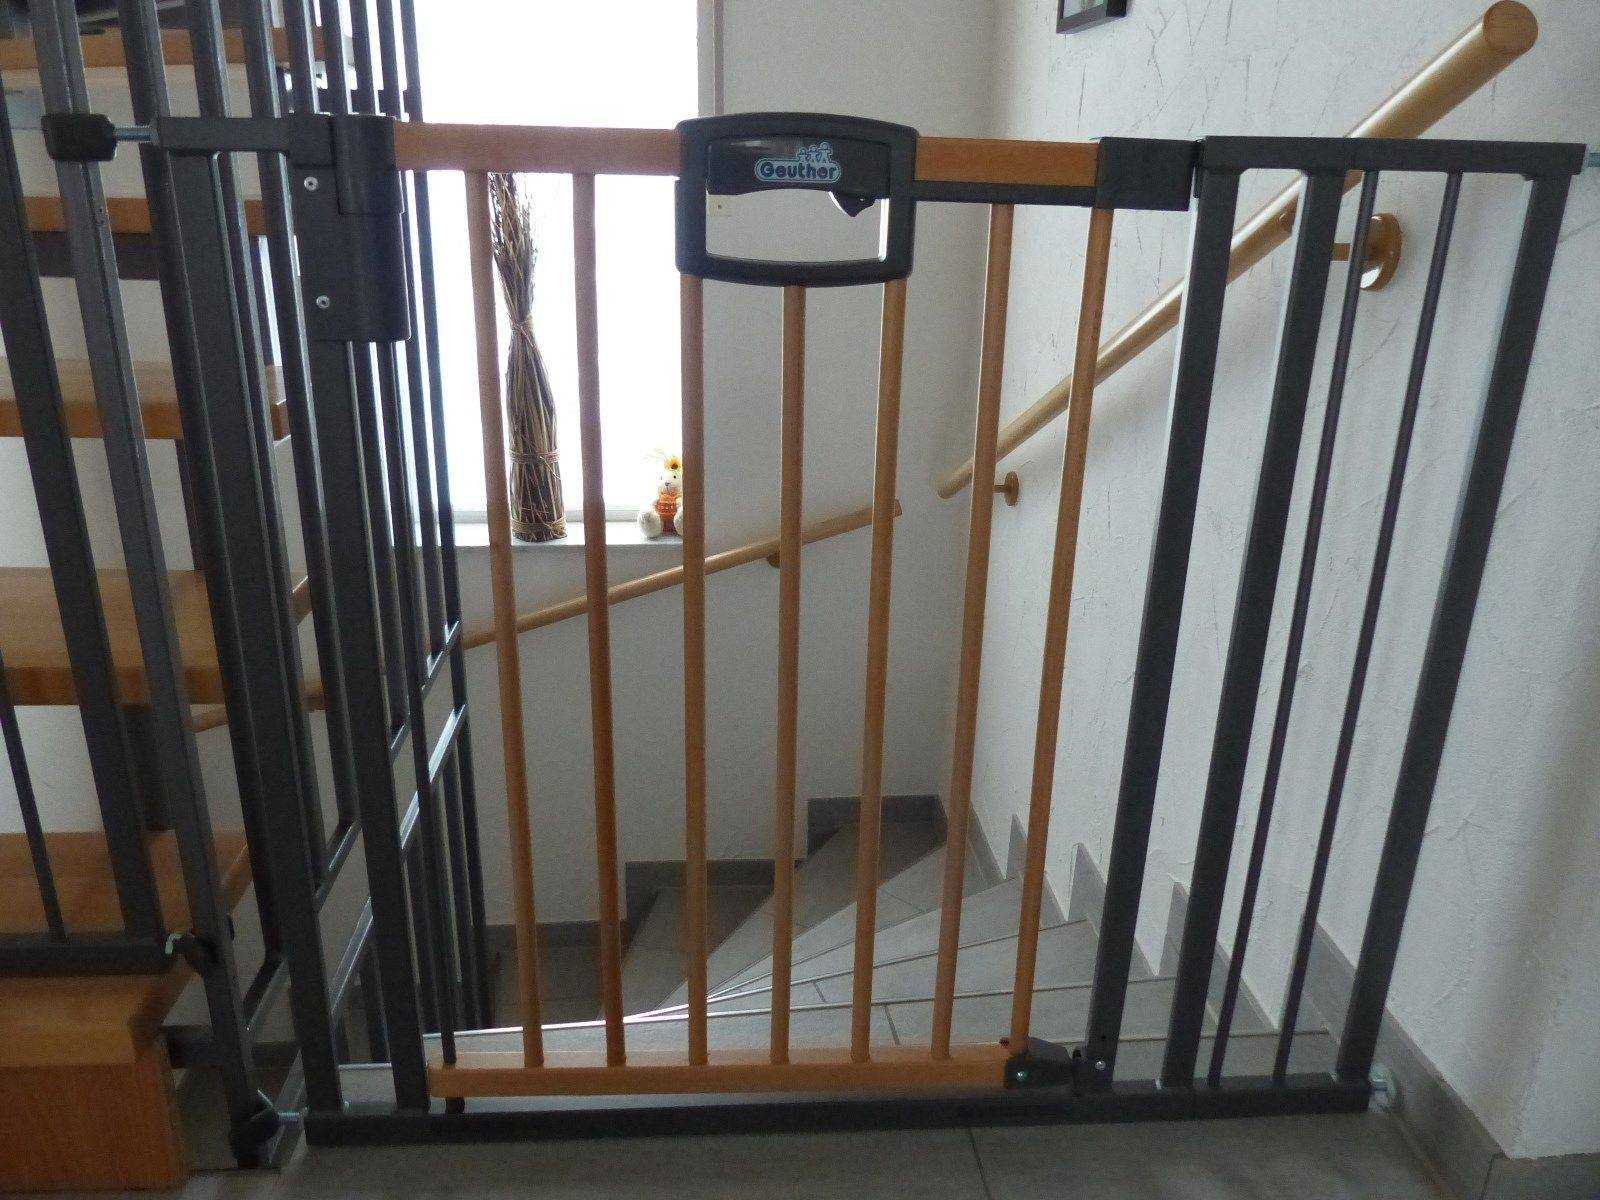 Организация безопастности дома для ребенка с помощью ограждений и ворот: забор безопасности для малыша в квартире, защитная загородка